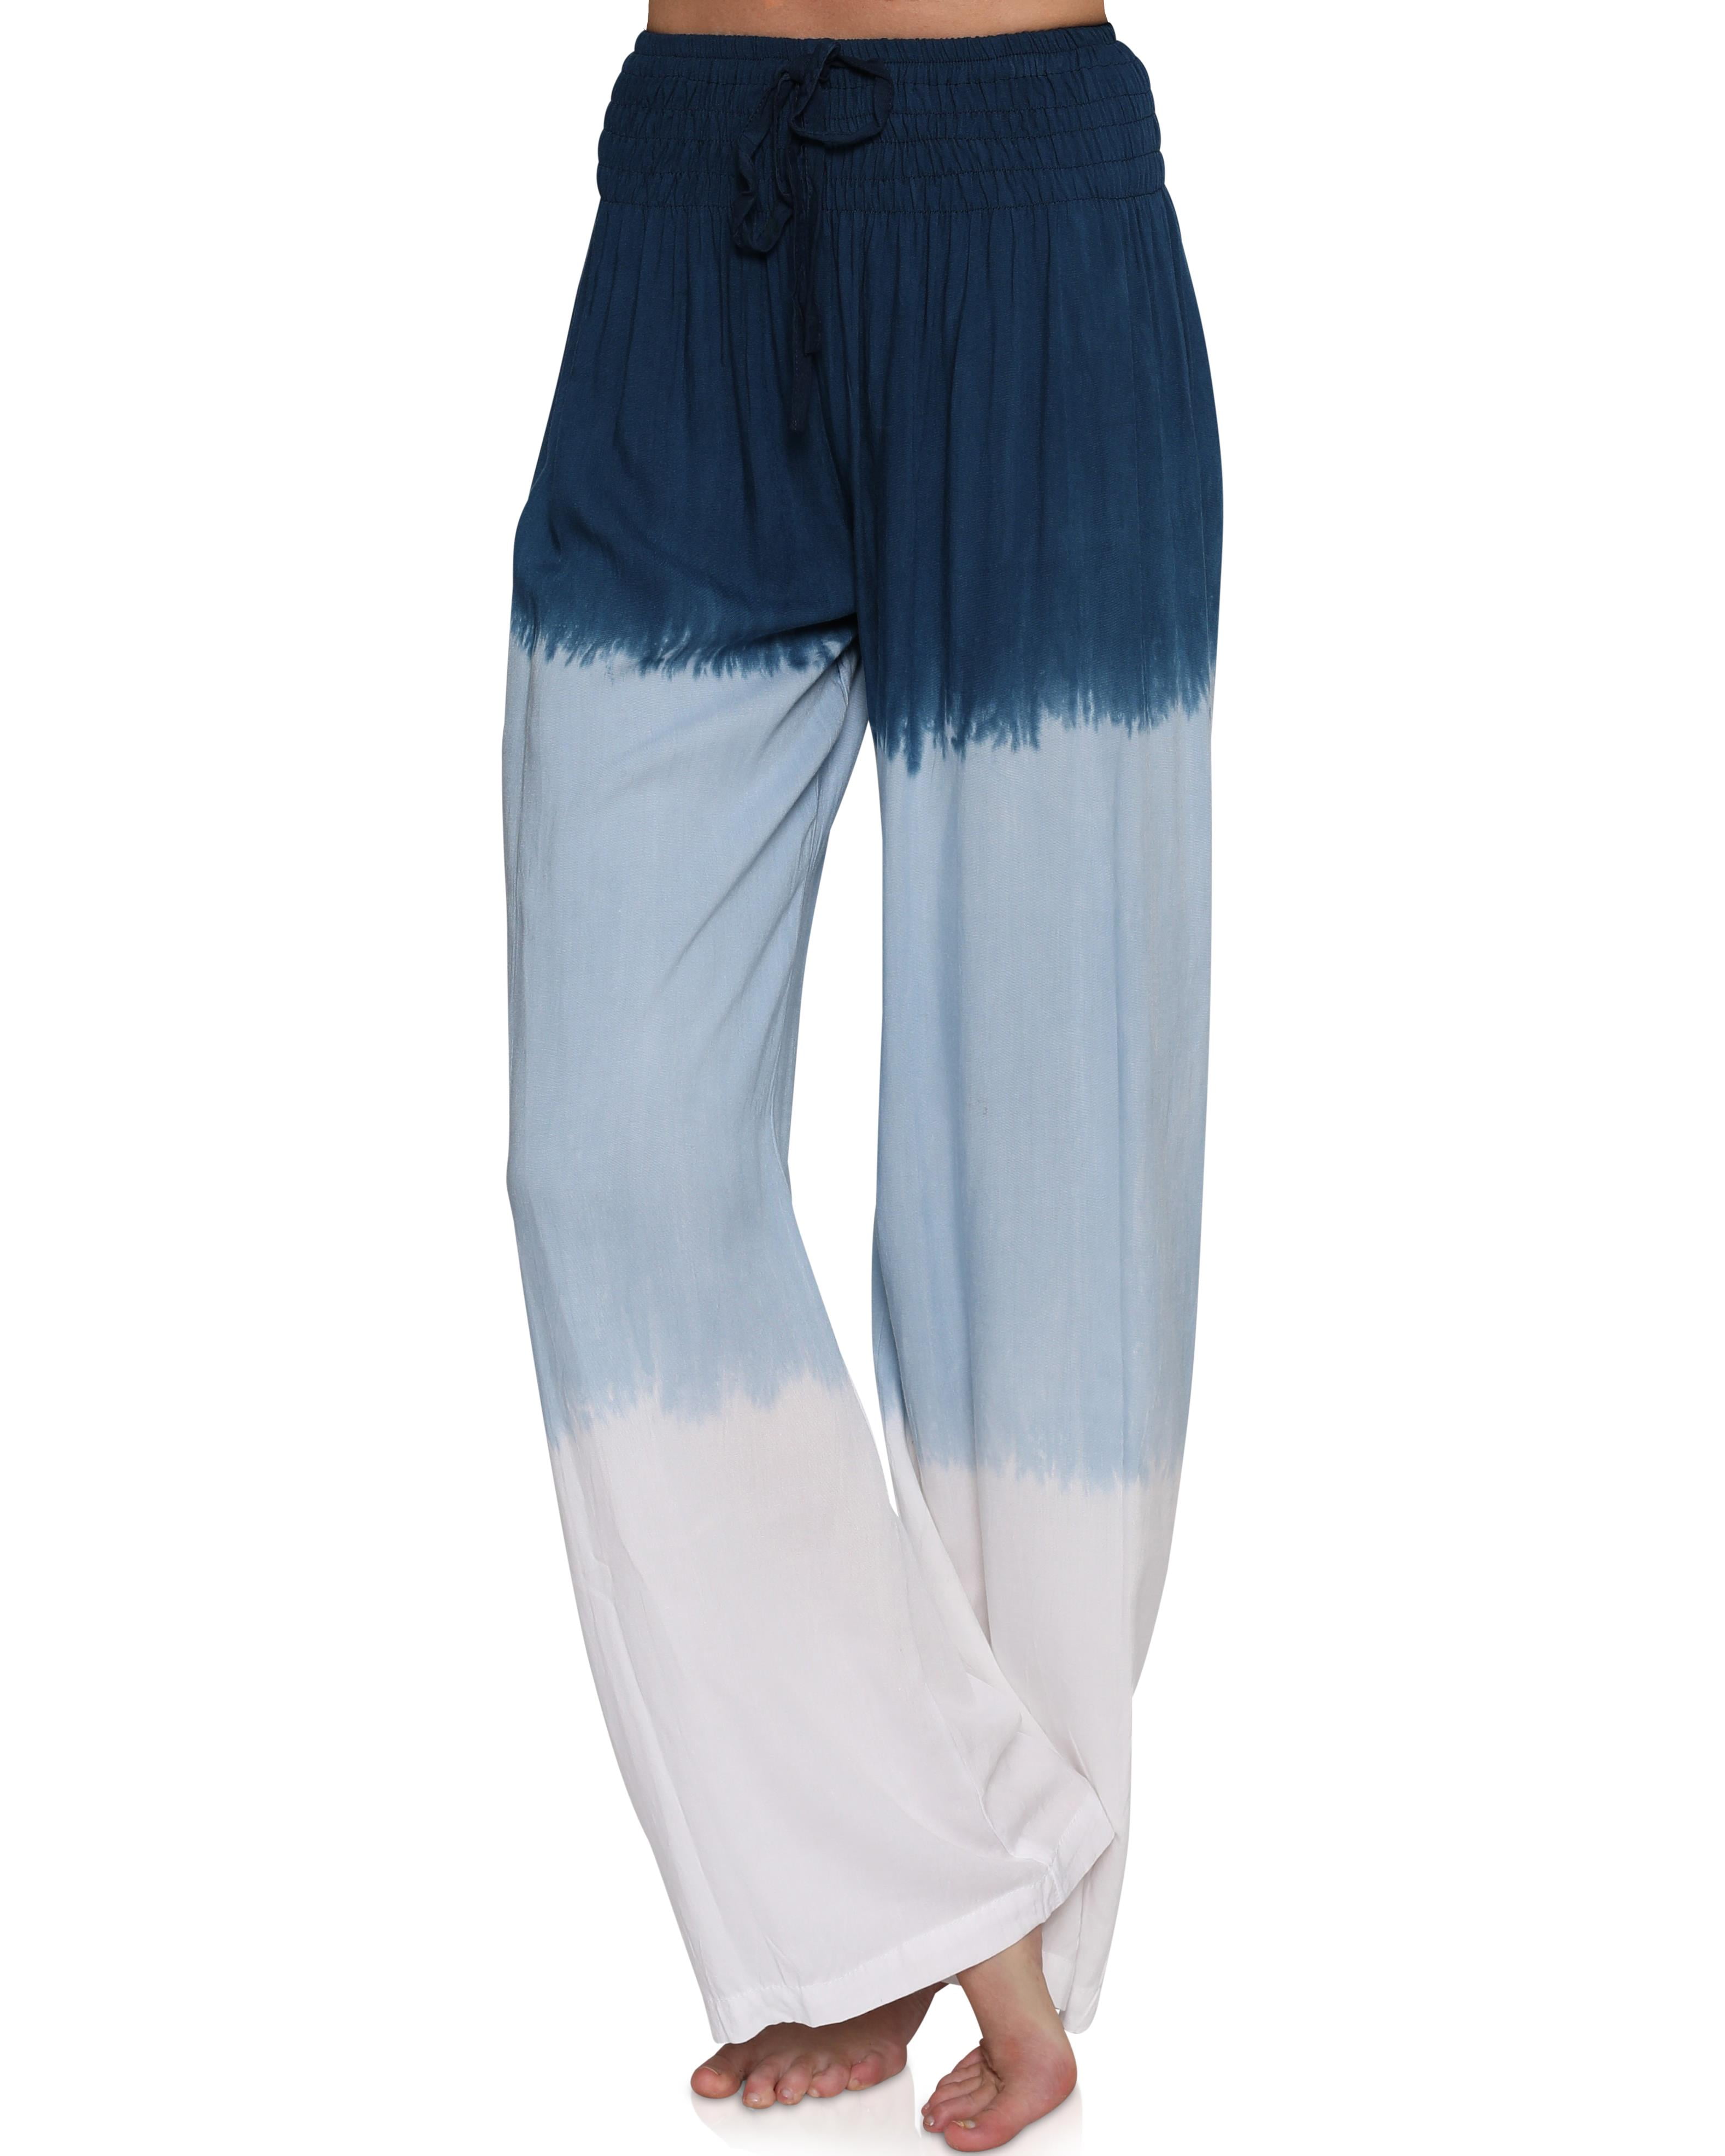 JanJean Kids Girls Tie Dye Print Pajama Pants Comfy Pjs Bottom Sleepwear Long Wide Leg Palazzo Pants Casual Lounge Pants 